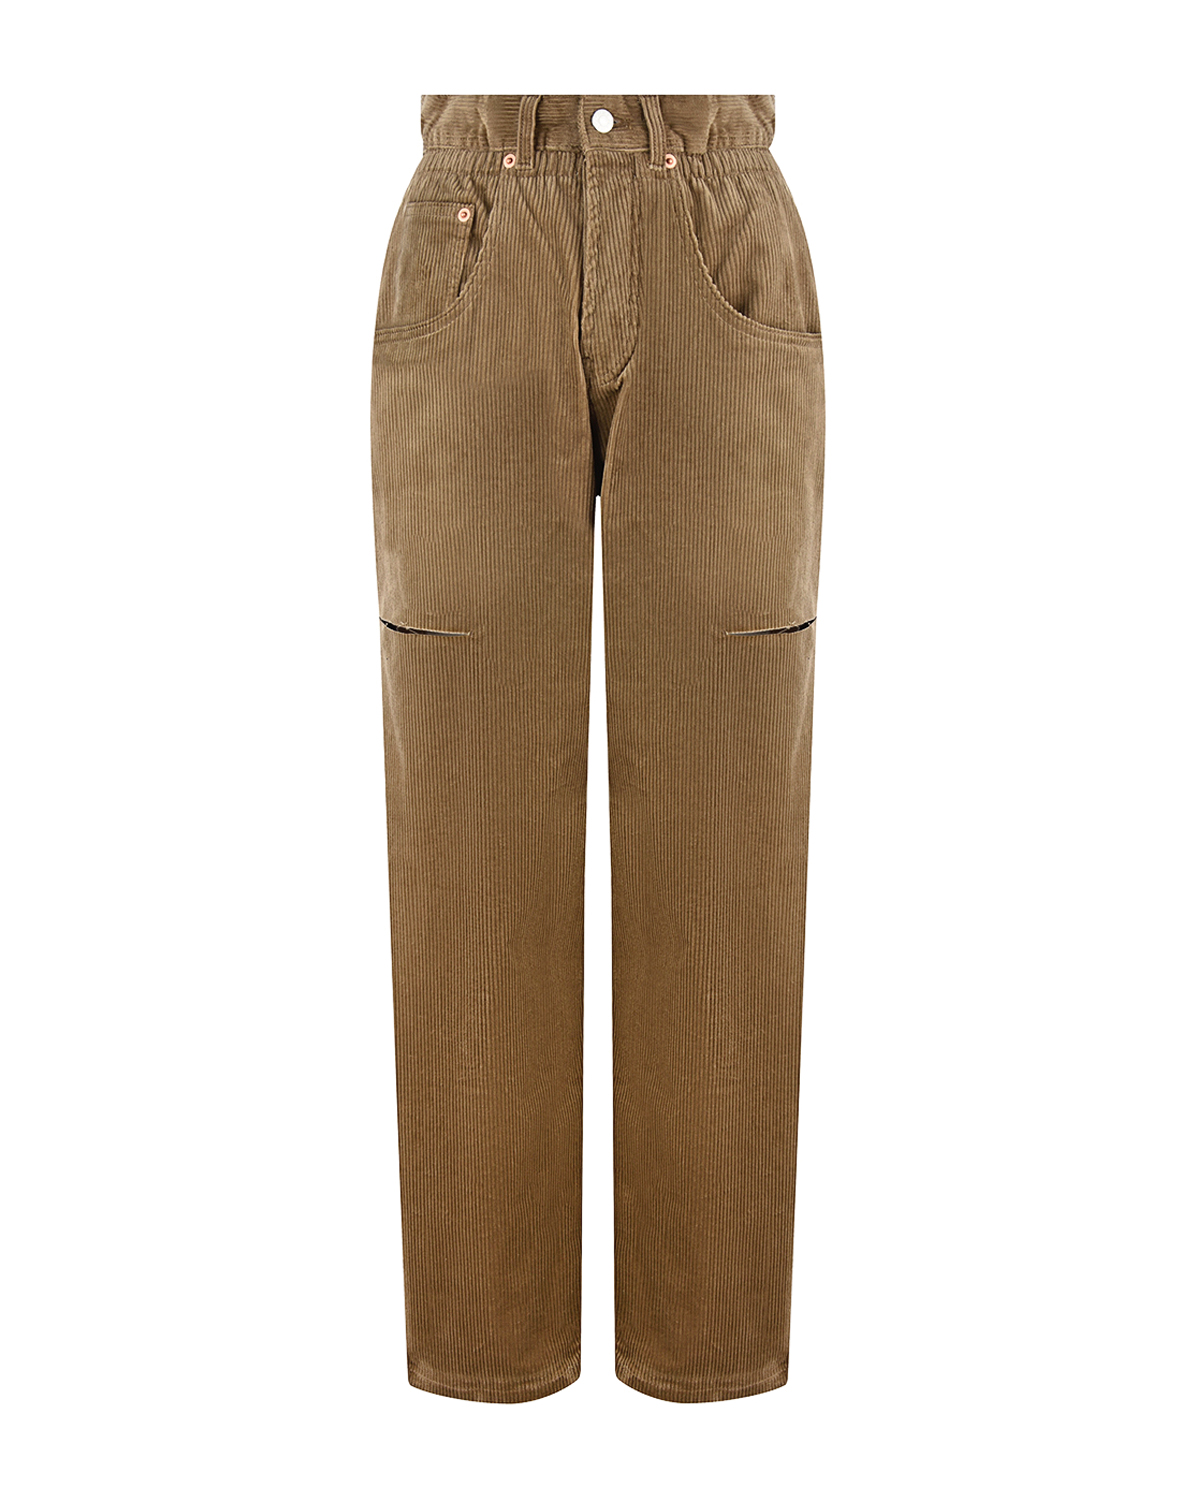 Коричневые вельветовые брюки Forte dei Marmi Couture, размер 36, цвет коричневый - фото 1